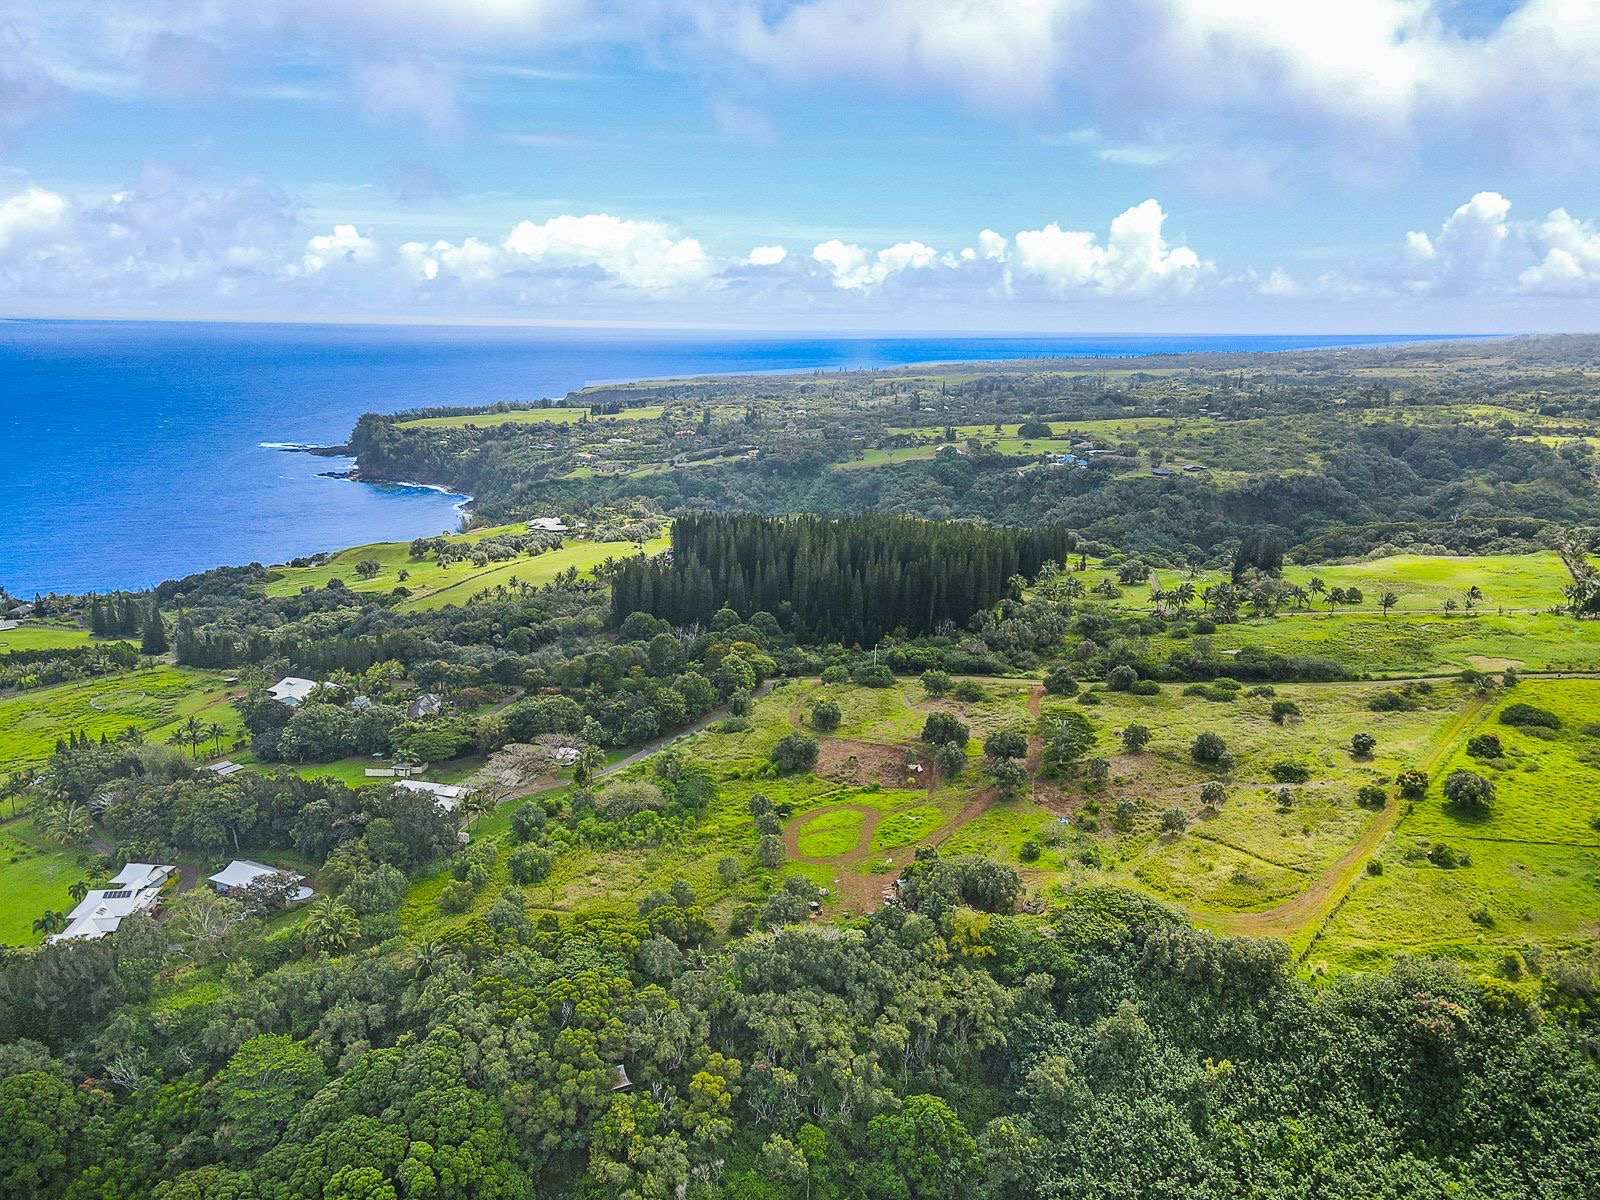 Manawai, Maui Sold 14 Acres